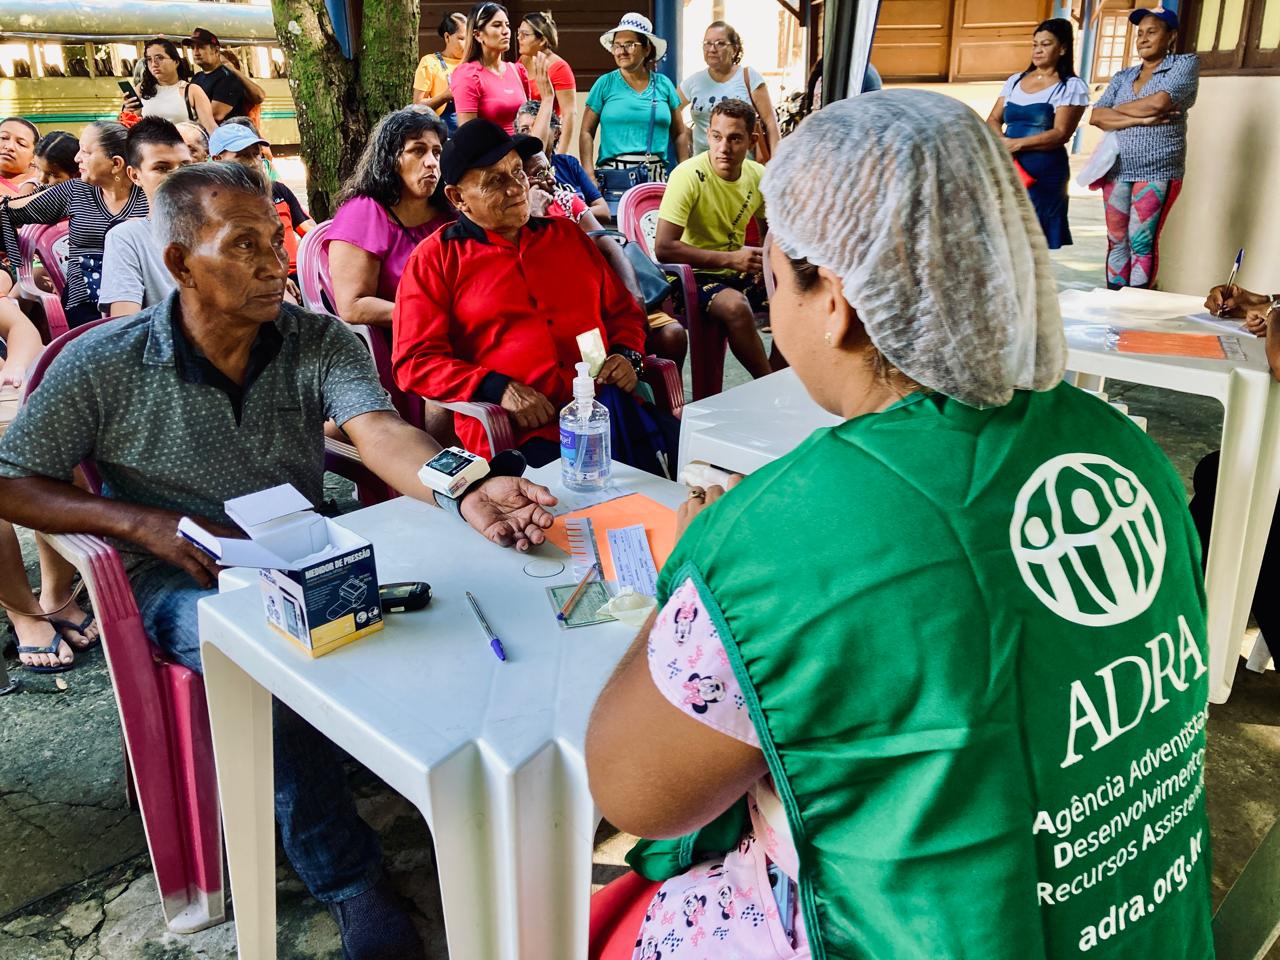 Agência Humanitária mobilizou profissionais de saúde para atender população da Ilha de Cotijuba – Belém